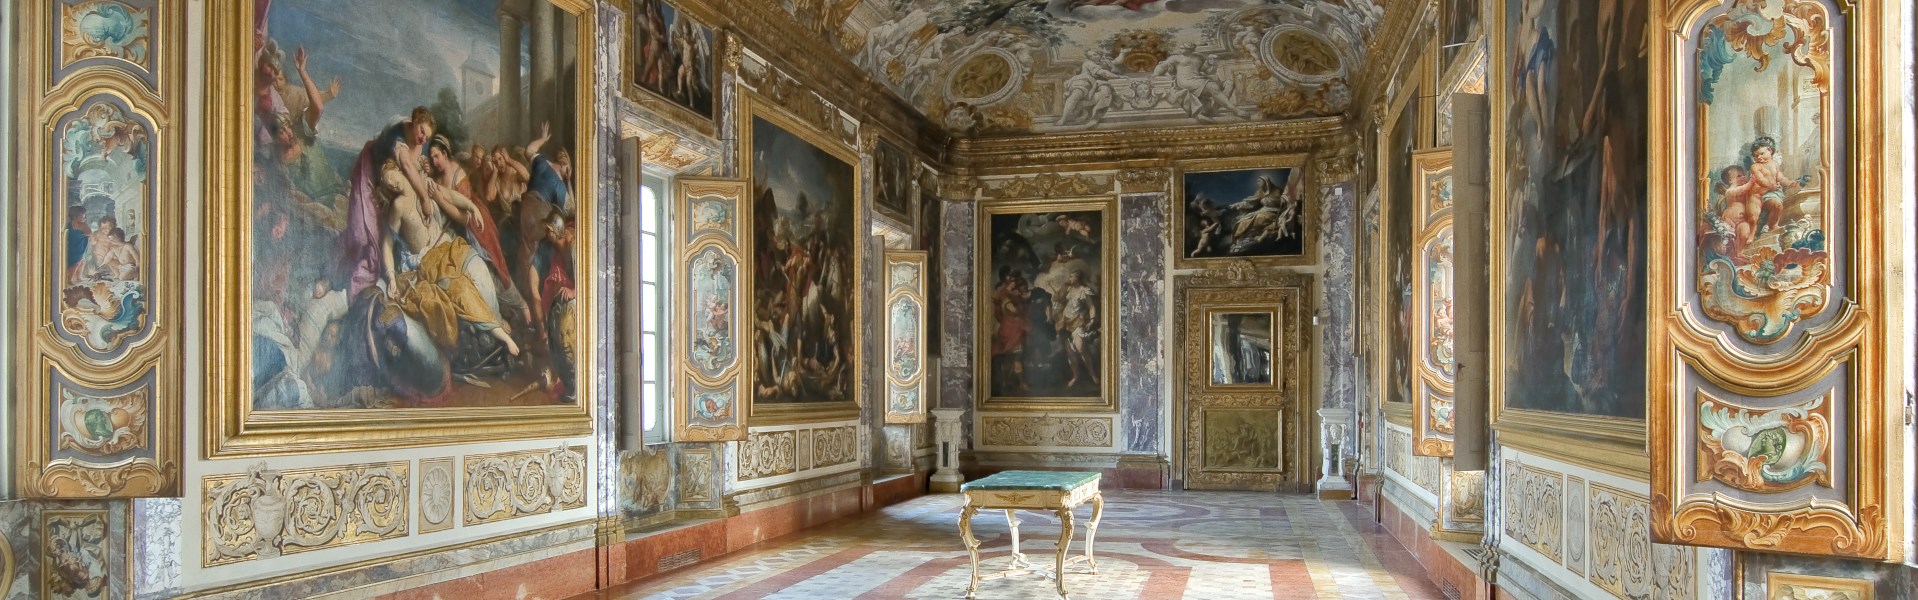 Macerata - Palazzo Buonaccorsi - "Sala dell'Eneide"